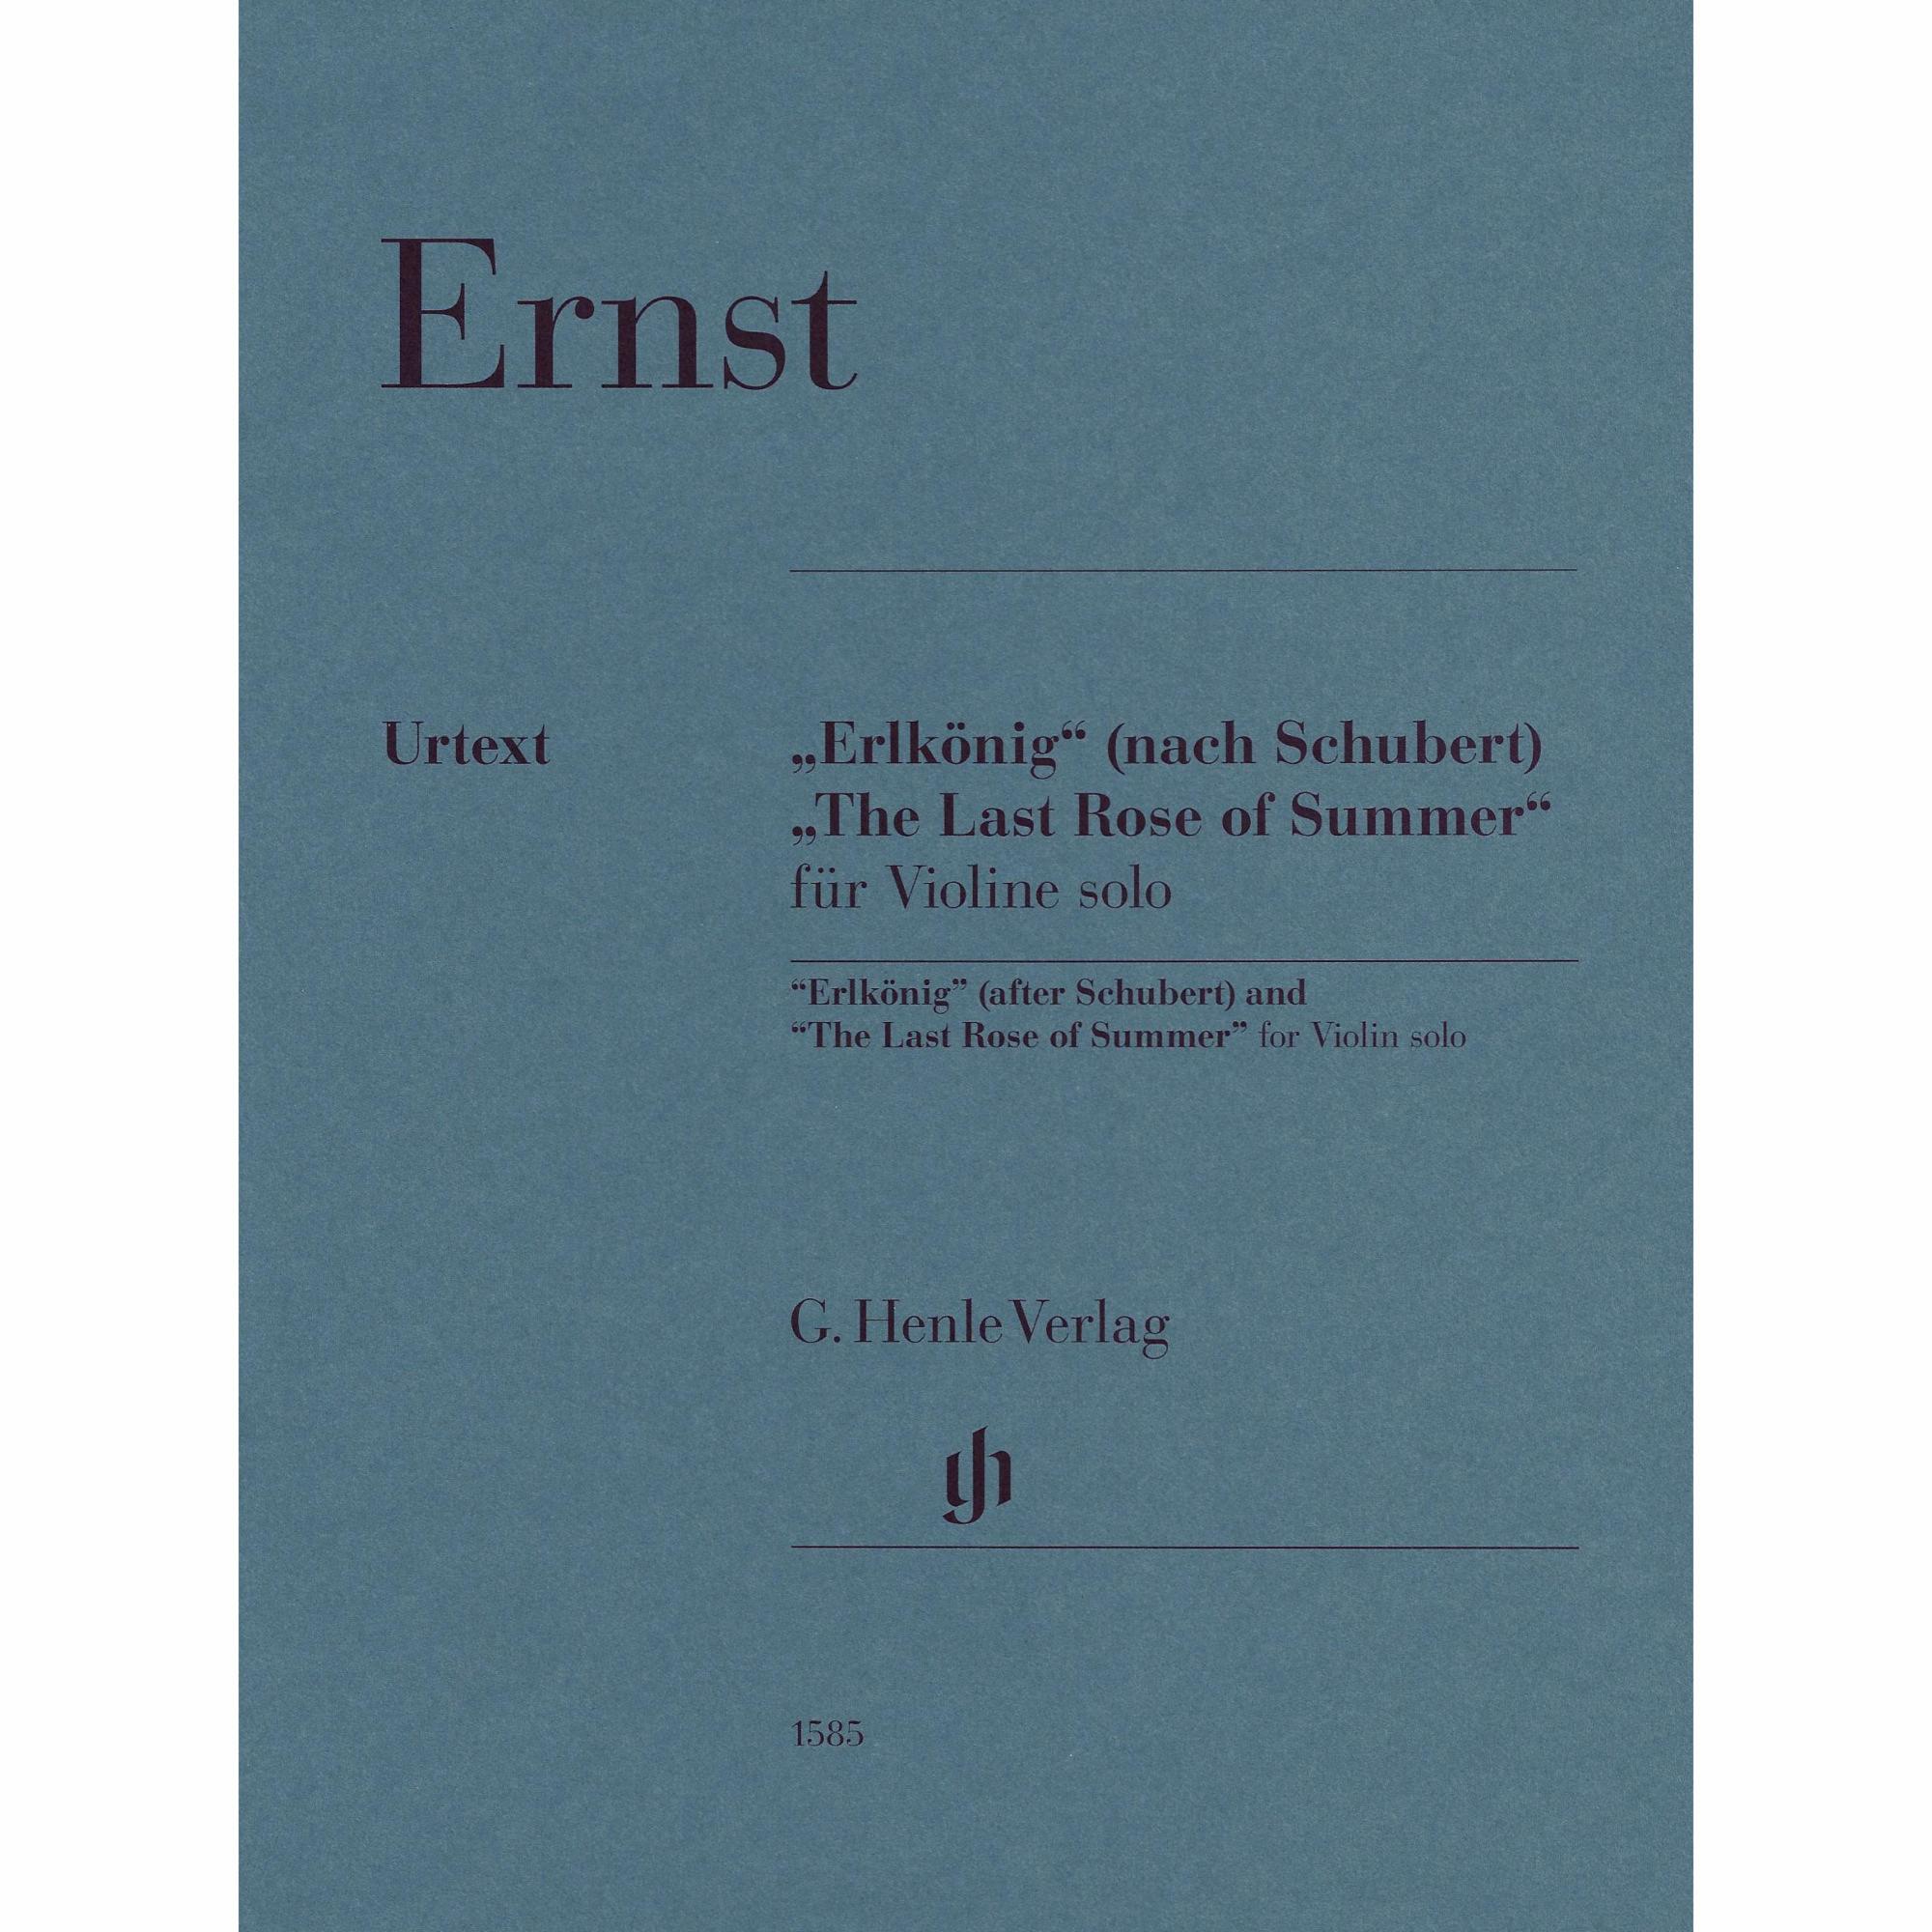 Ernst -- Erlkonig & The Last Rose of Summer for Solo Violin